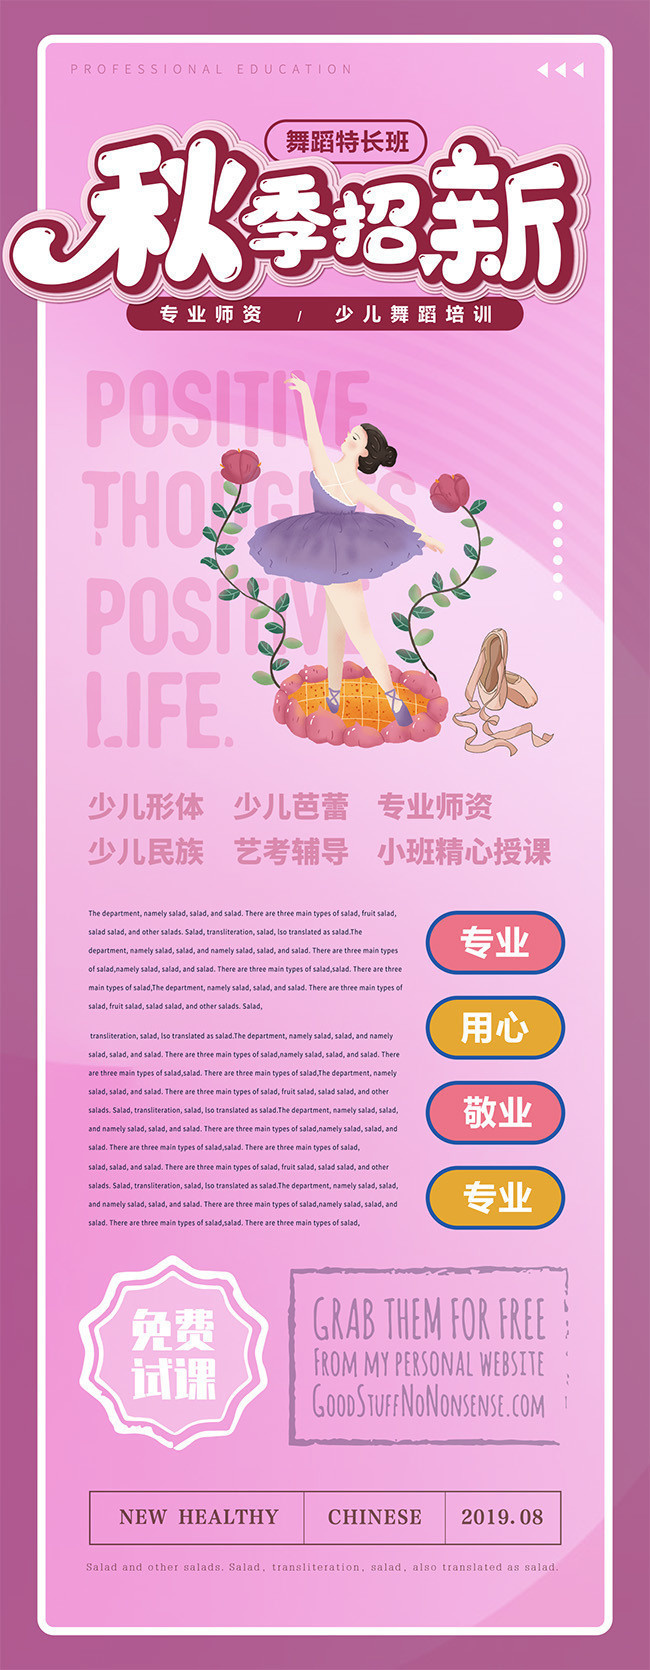 秋季舞蹈班招新宣传海报图片